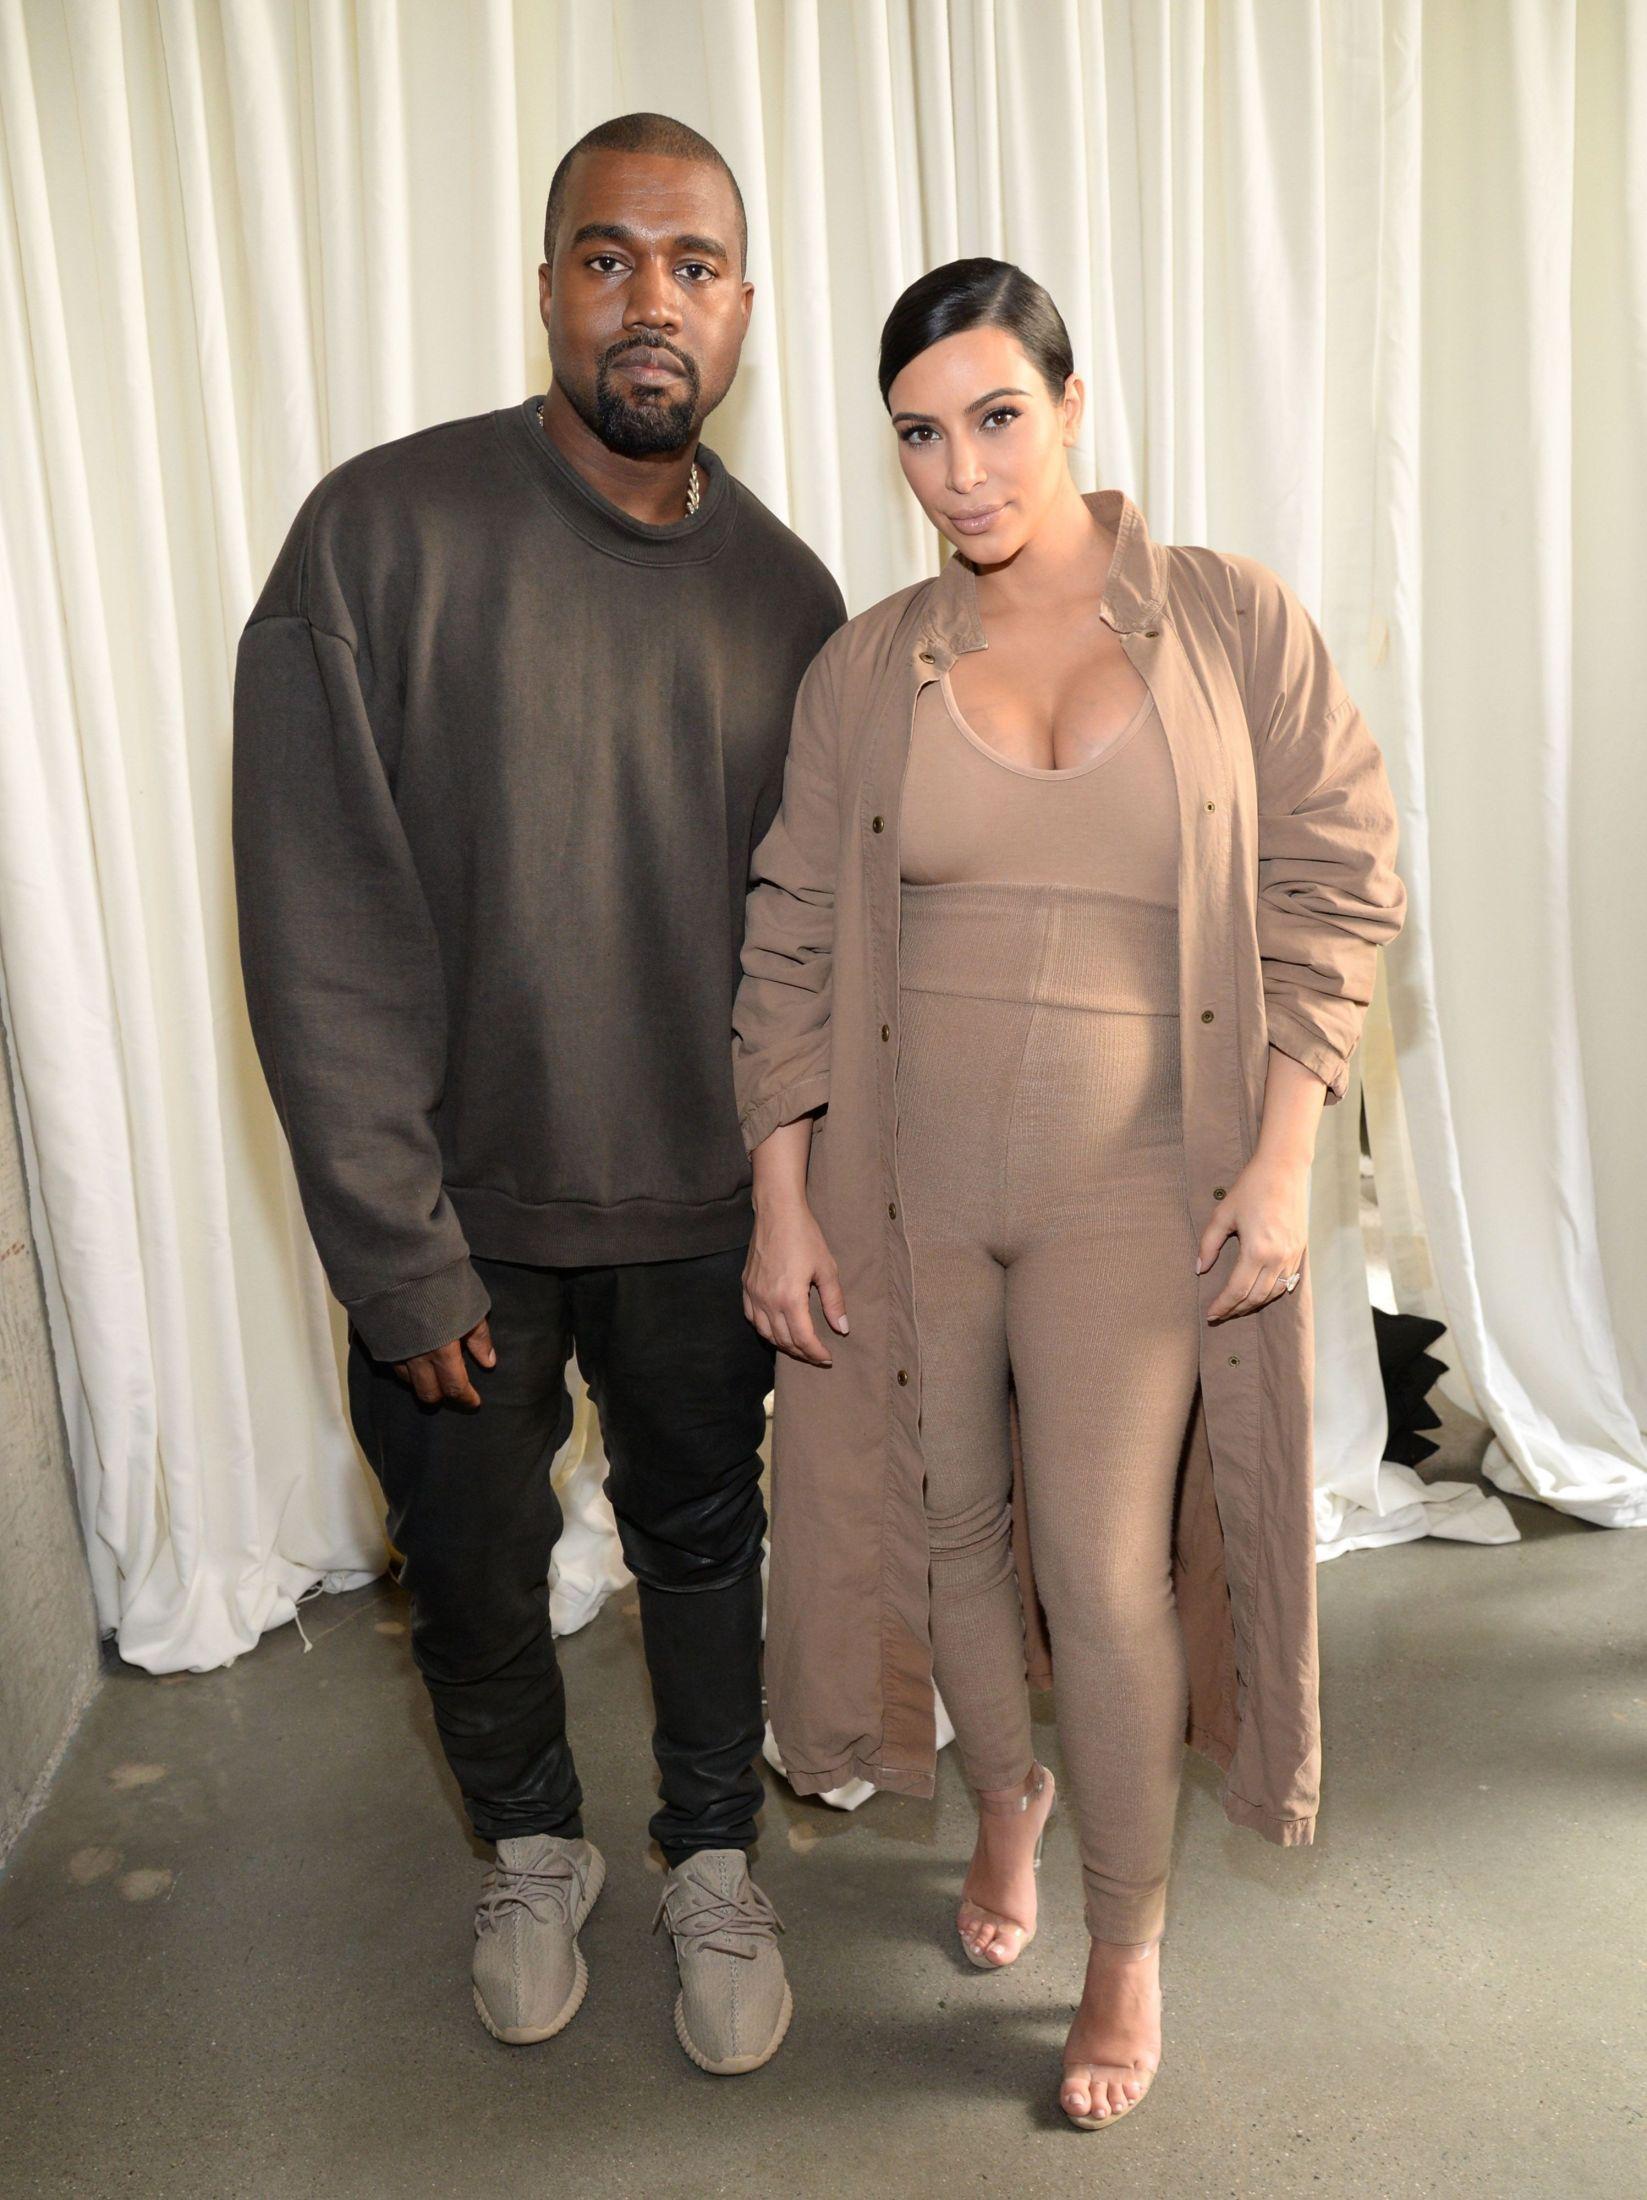 FØR SHOW: Kanye West og Kim Kardashian West ikledd Yeezy season 2 før visningen til klesmerket under Paris Fashion Week. Foto: AFP